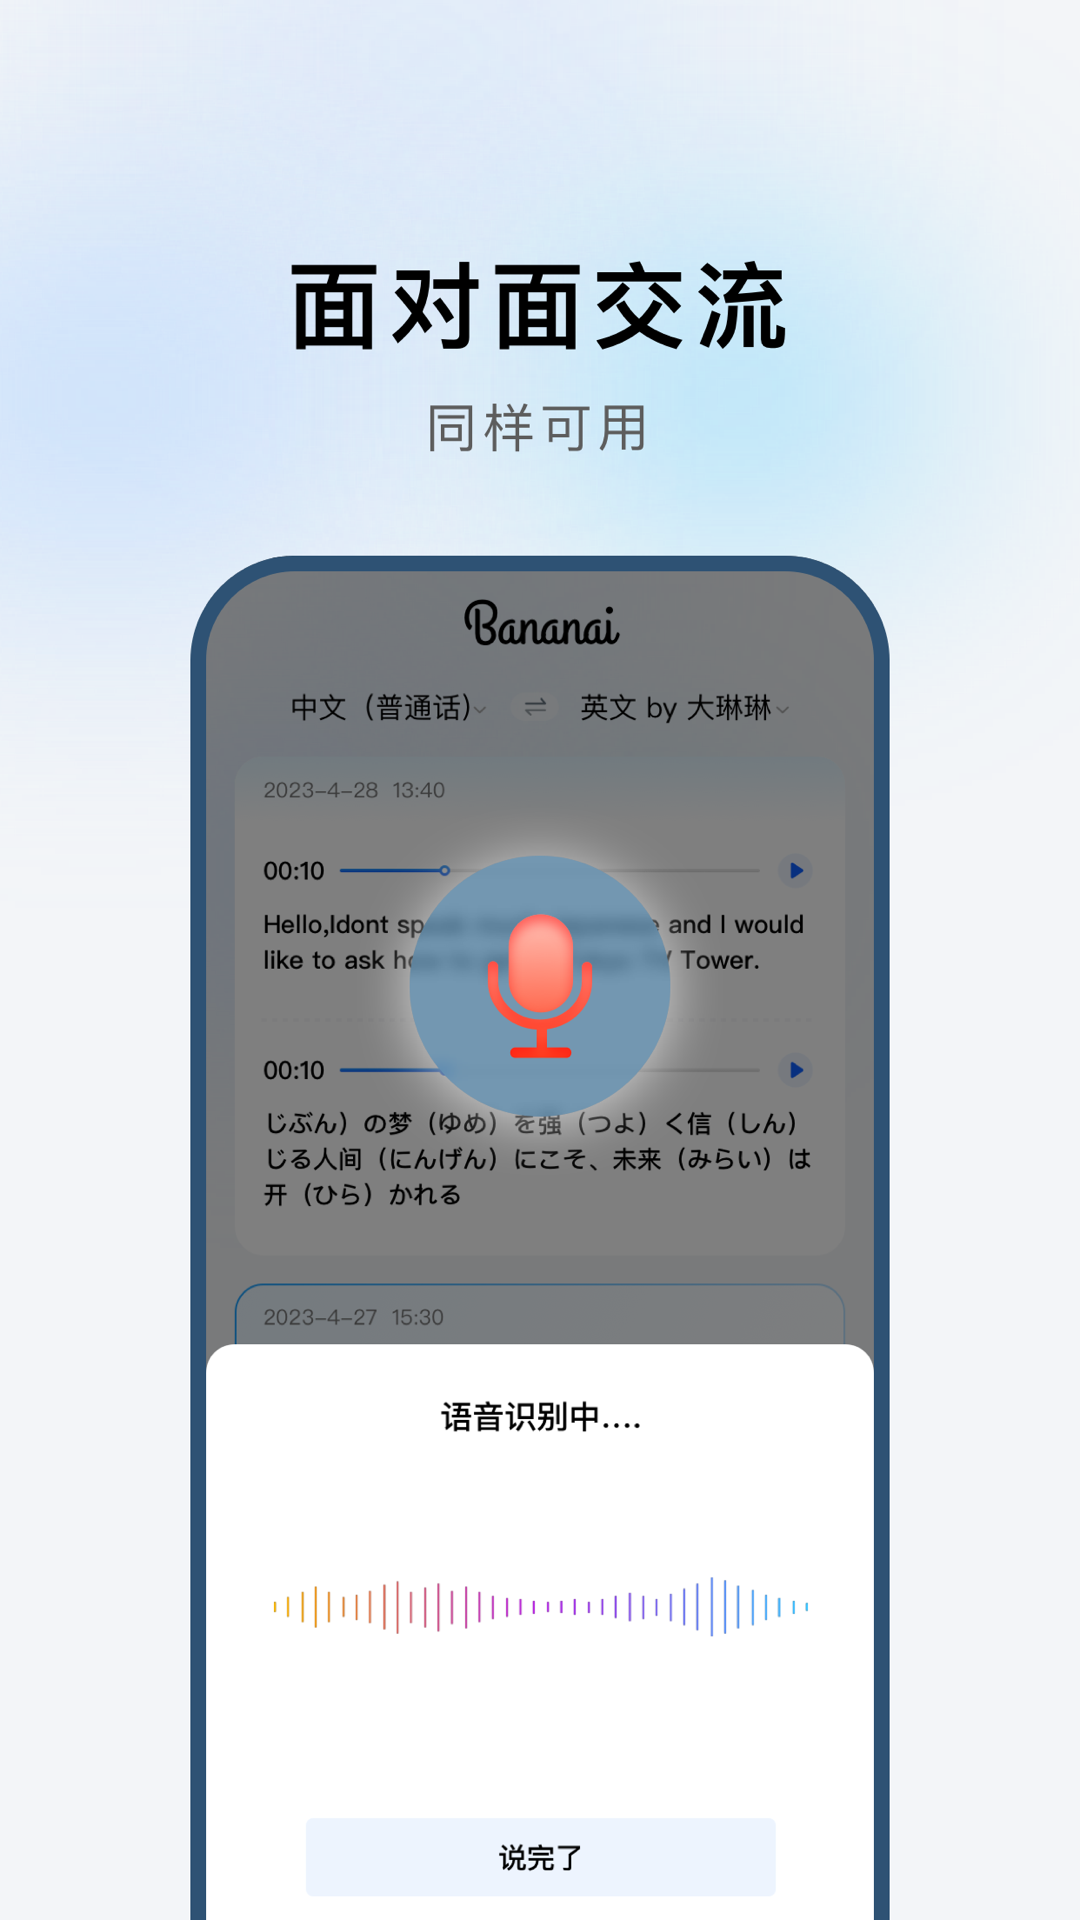 布拿拿聊天翻译手机软件app